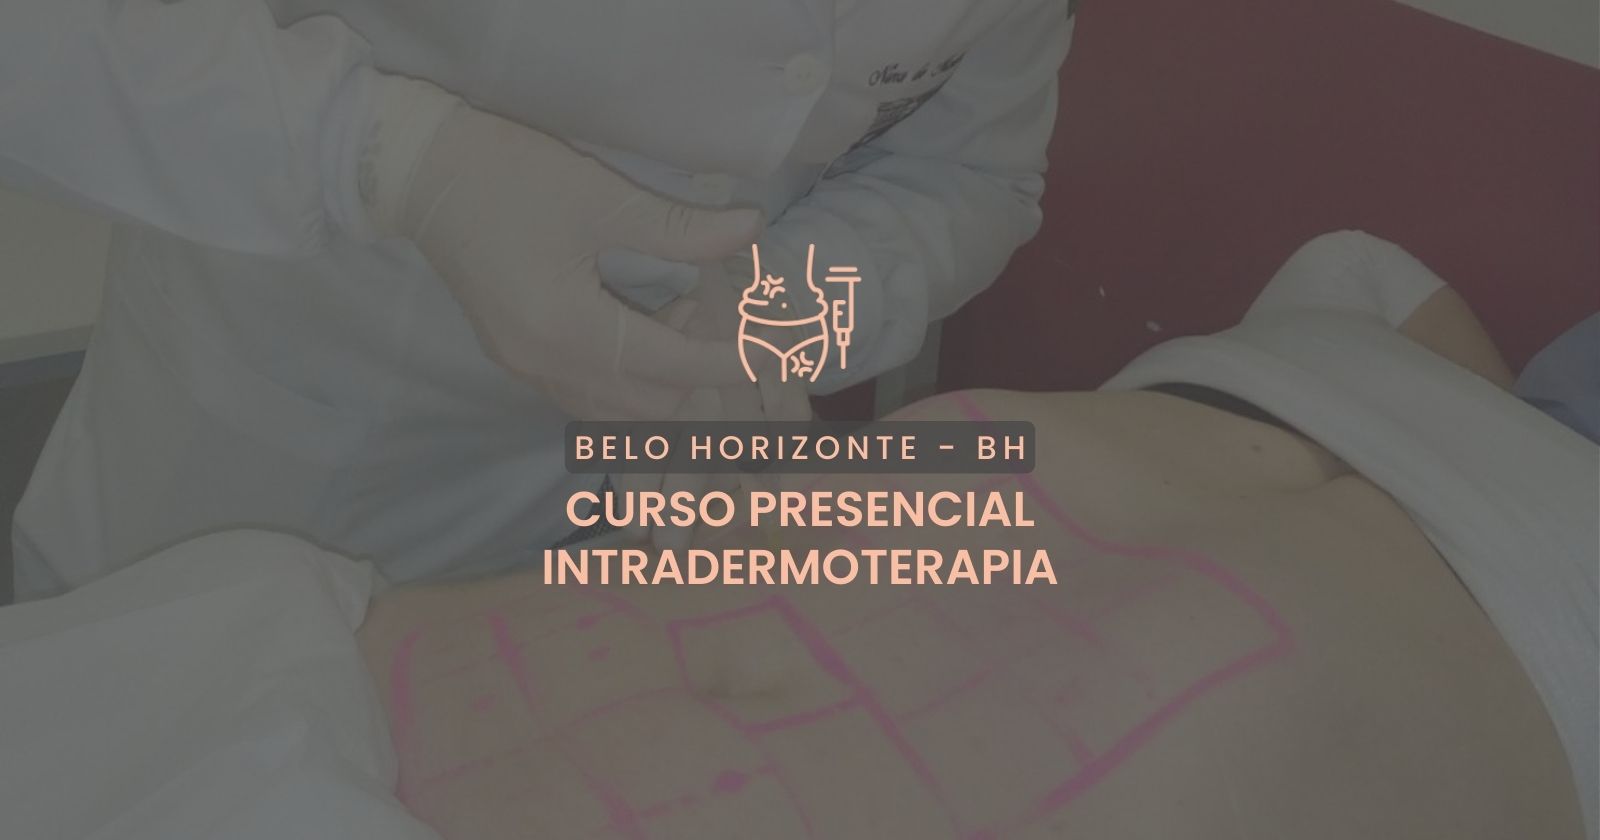 Curso presencial - Intradermoterapia Belo Horizonte